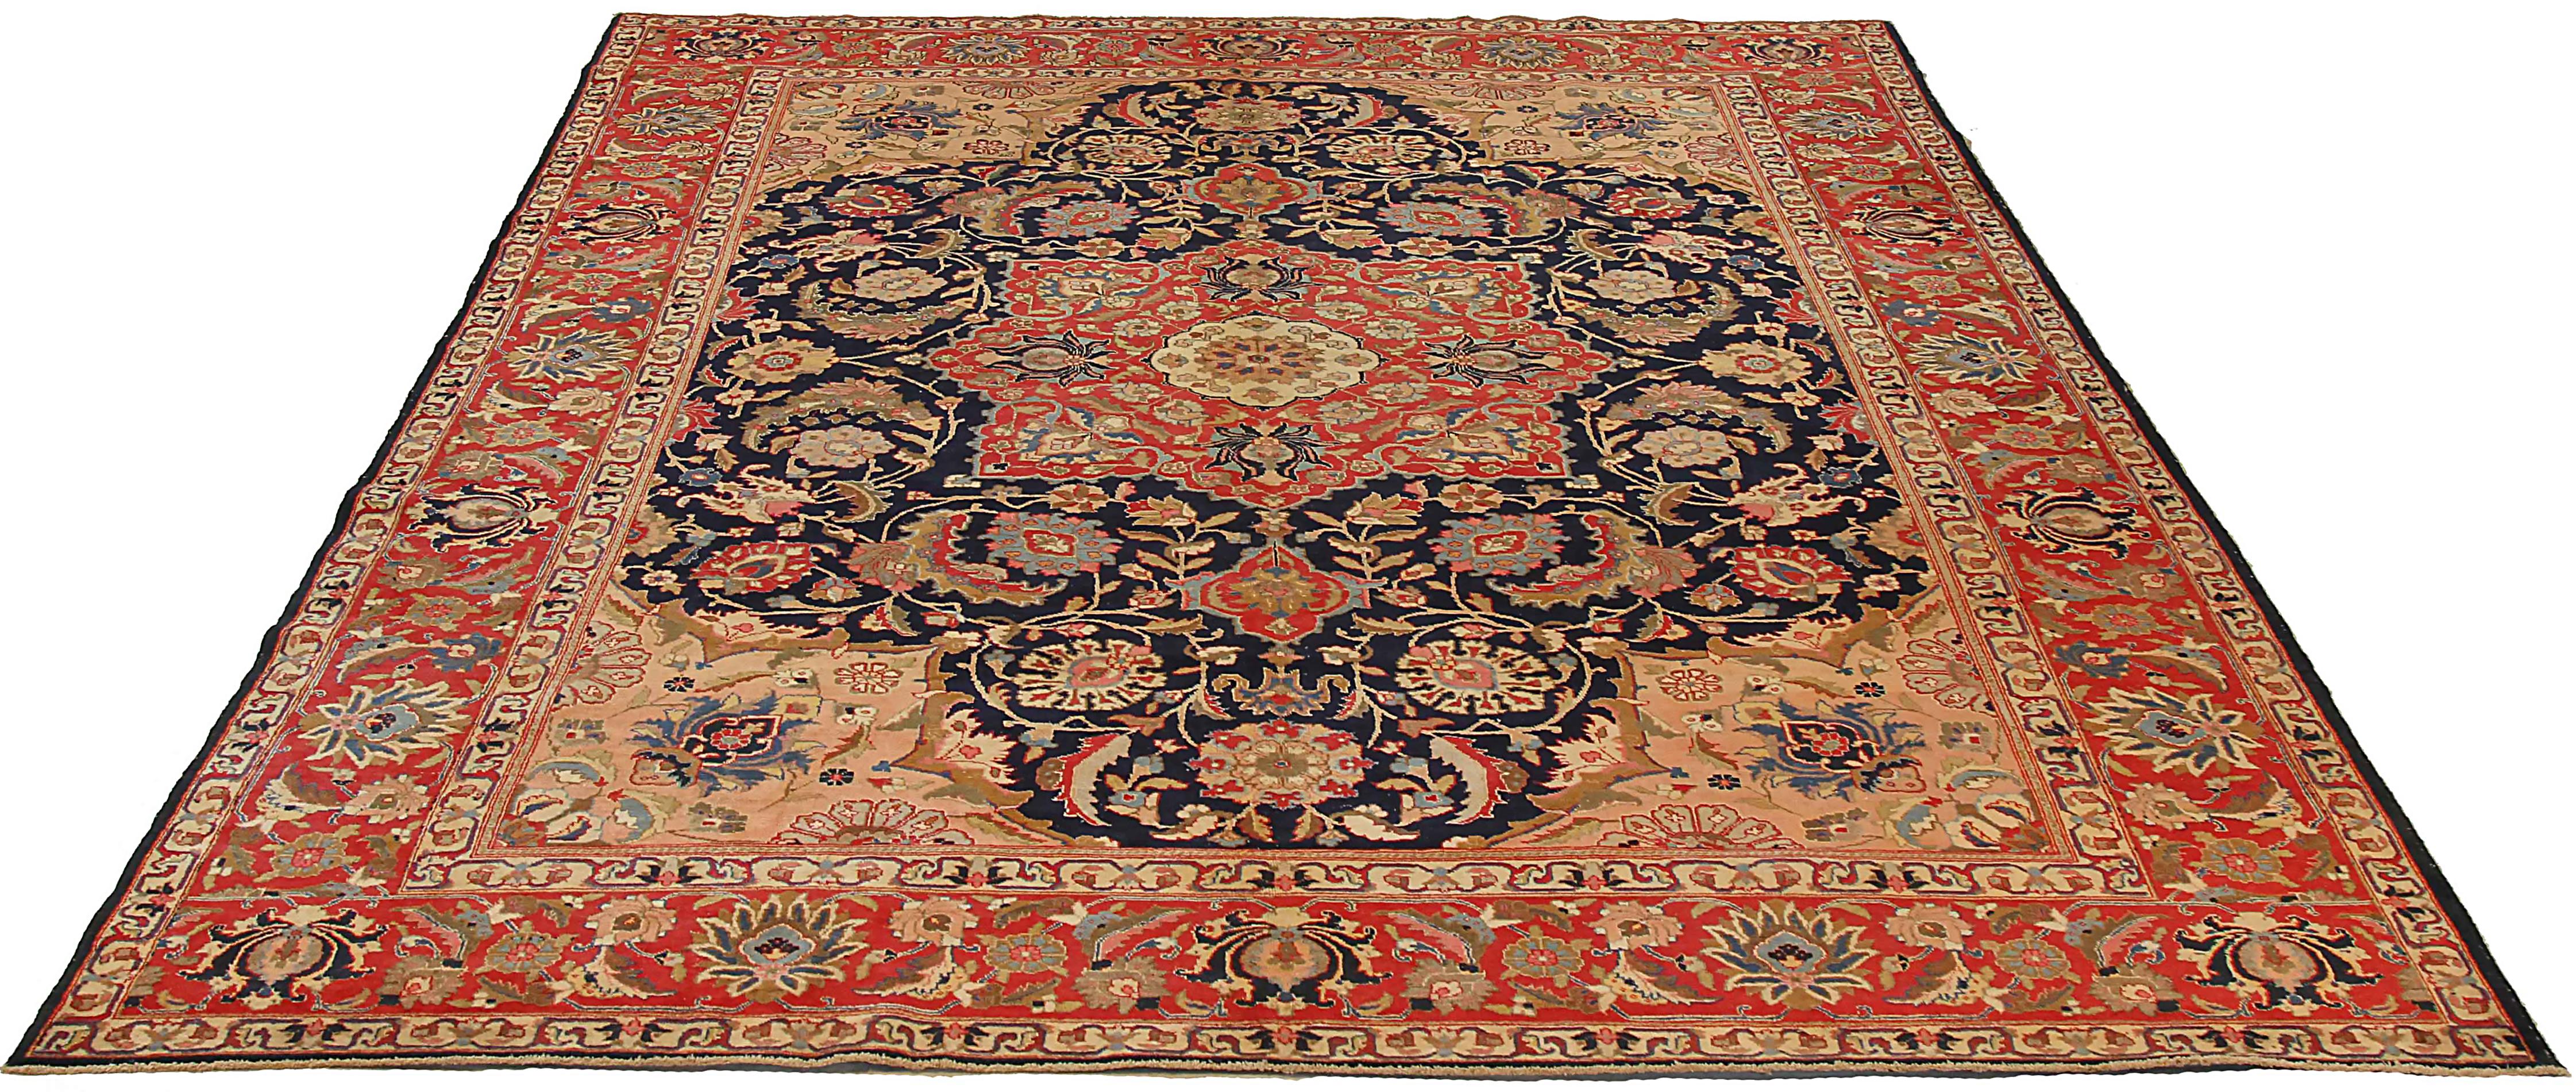 Ancien tapis persan tissé à la main à partir de la meilleure laine de mouton. Il est coloré avec des colorants végétaux entièrement naturels, sans danger pour les humains et les animaux de compagnie. Il s'agit d'un modèle traditionnel Khoy tissé à